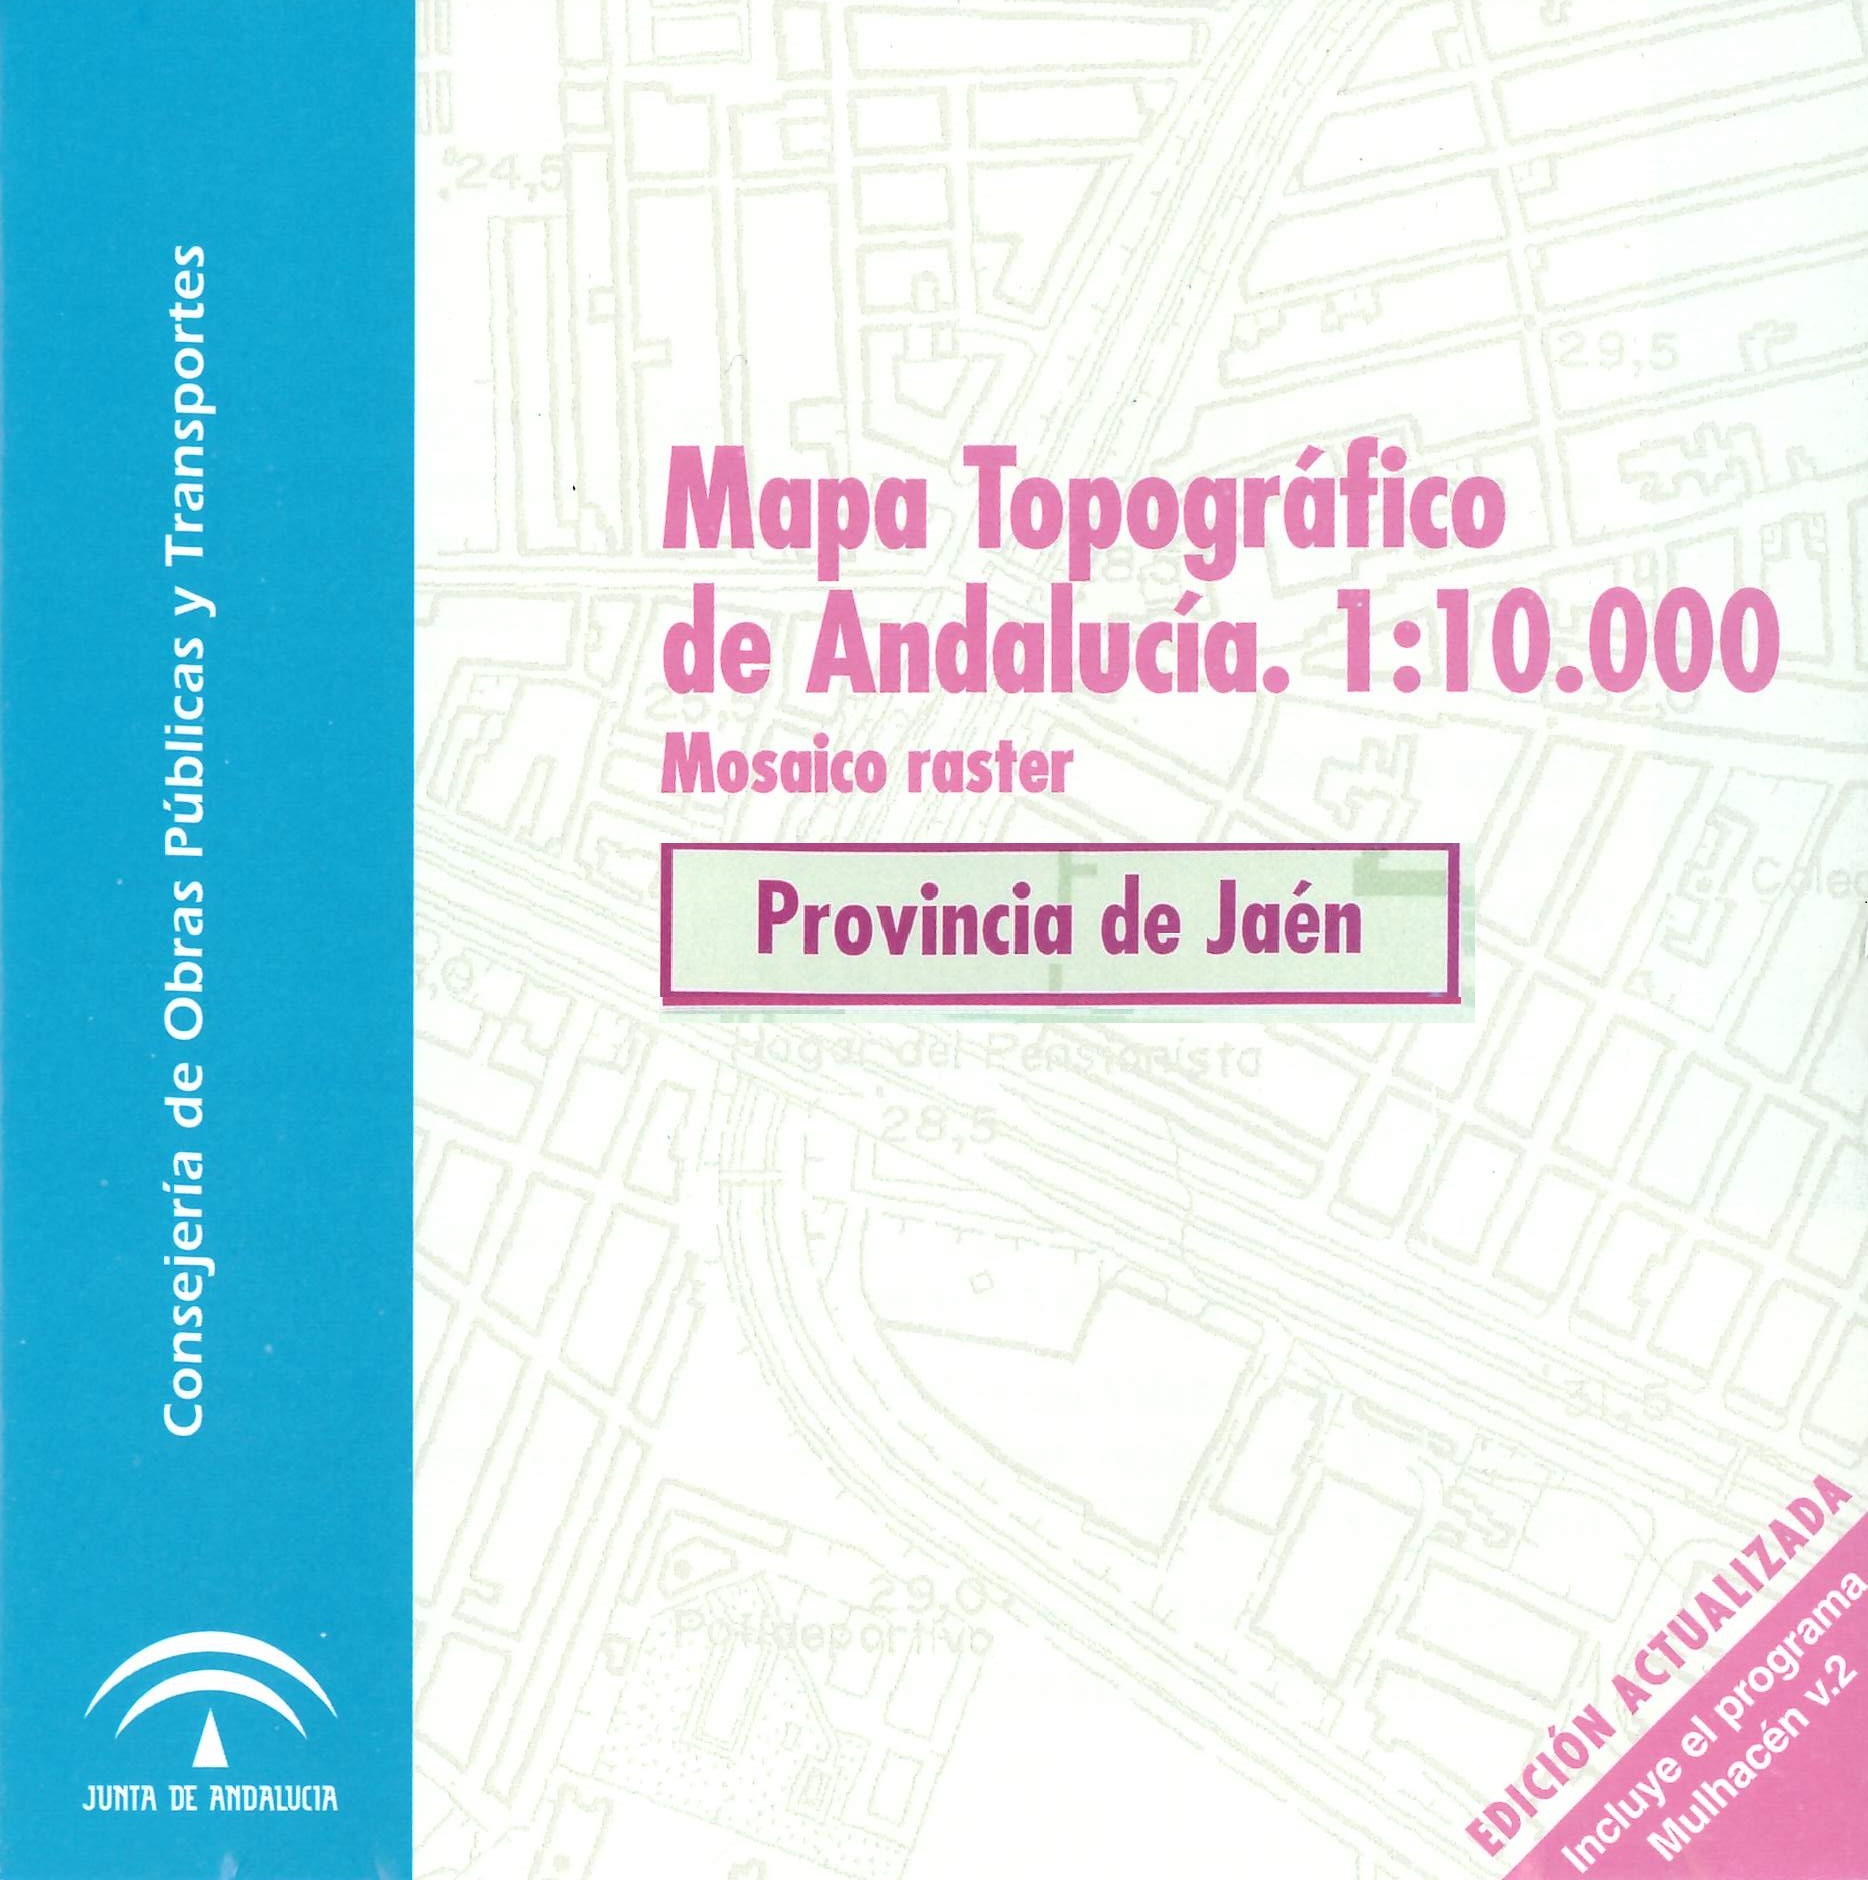 Imagen representativa del Mapa topográfico de Andalucía 1:10.000: mosaico raster, provincia de Jaén_2001